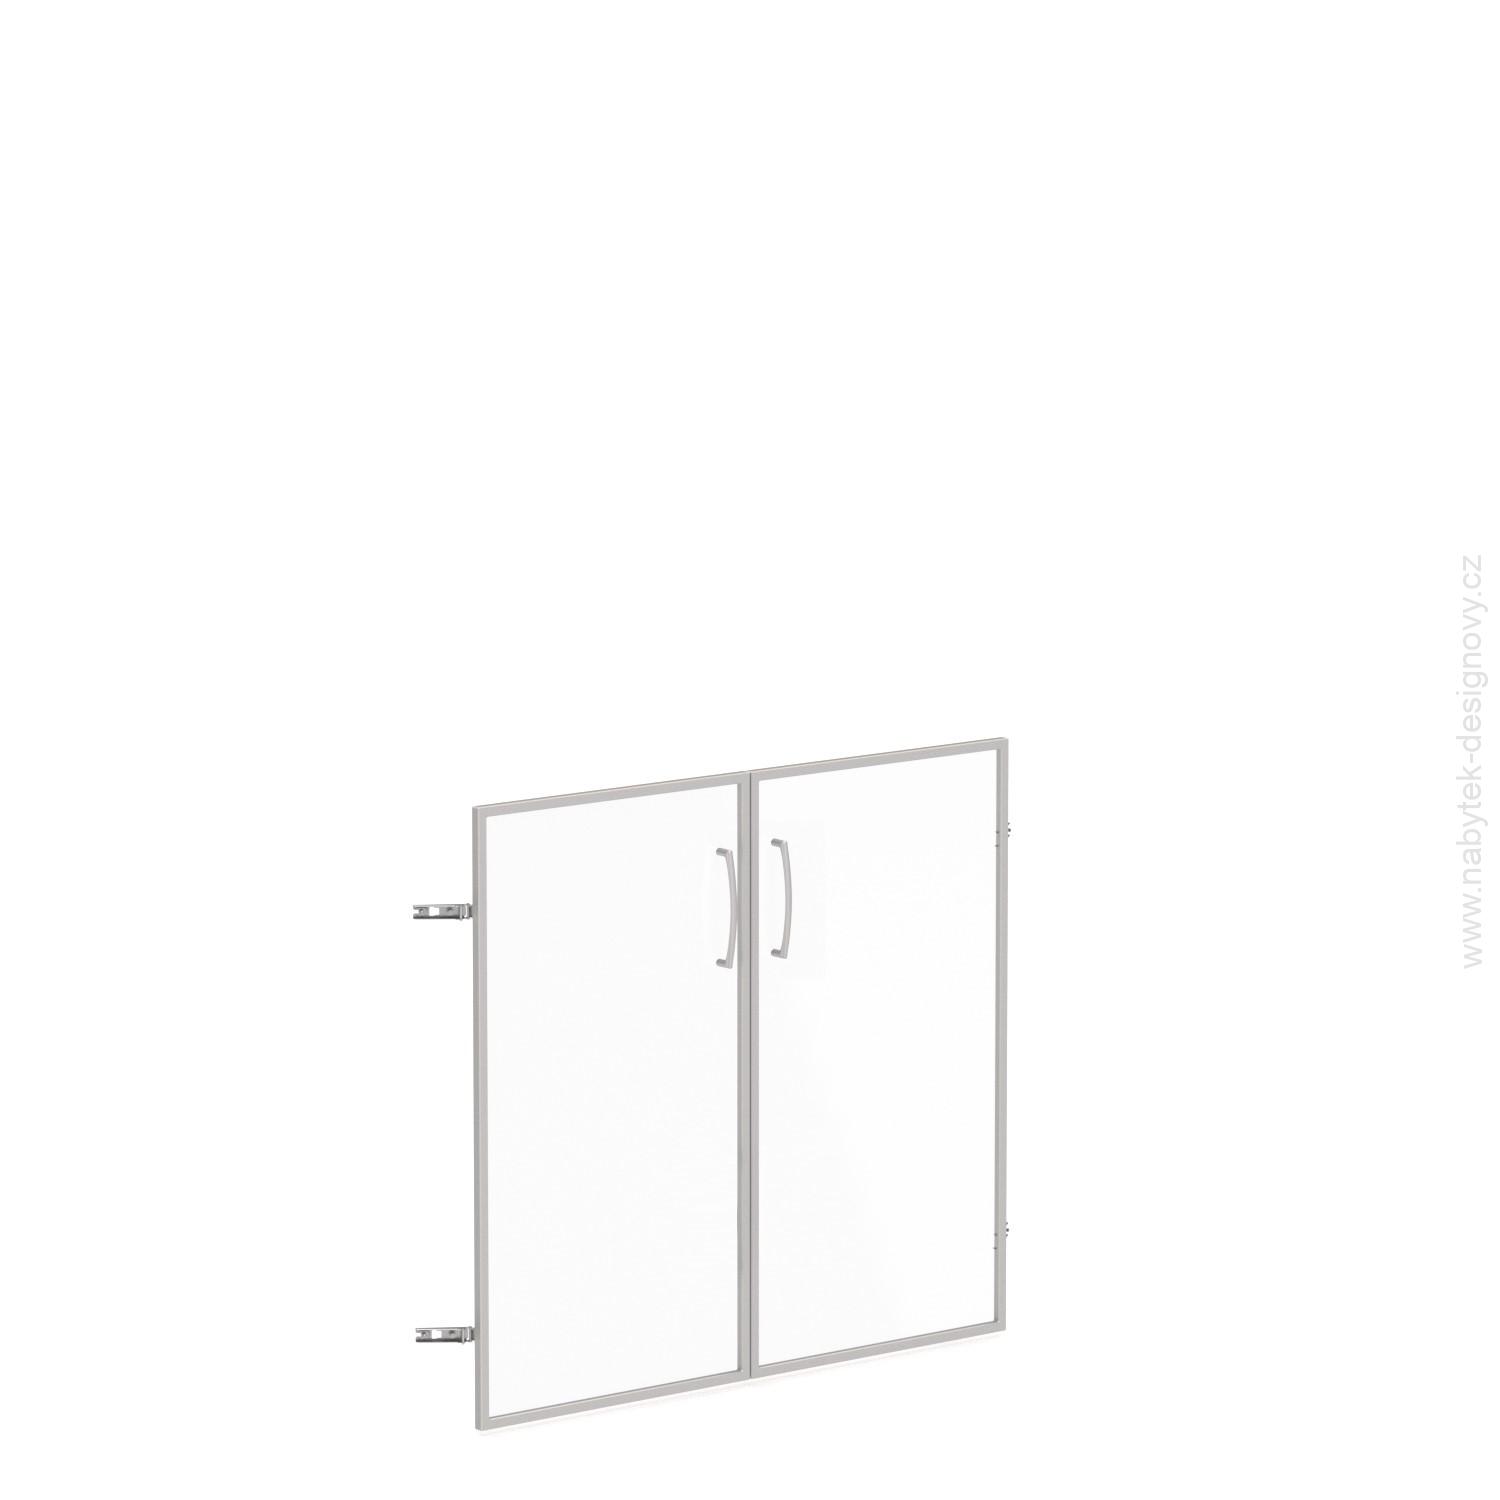 Skleněné dveře v AL rámu, výška 33,7cm, šířka 78,6/118,6cm